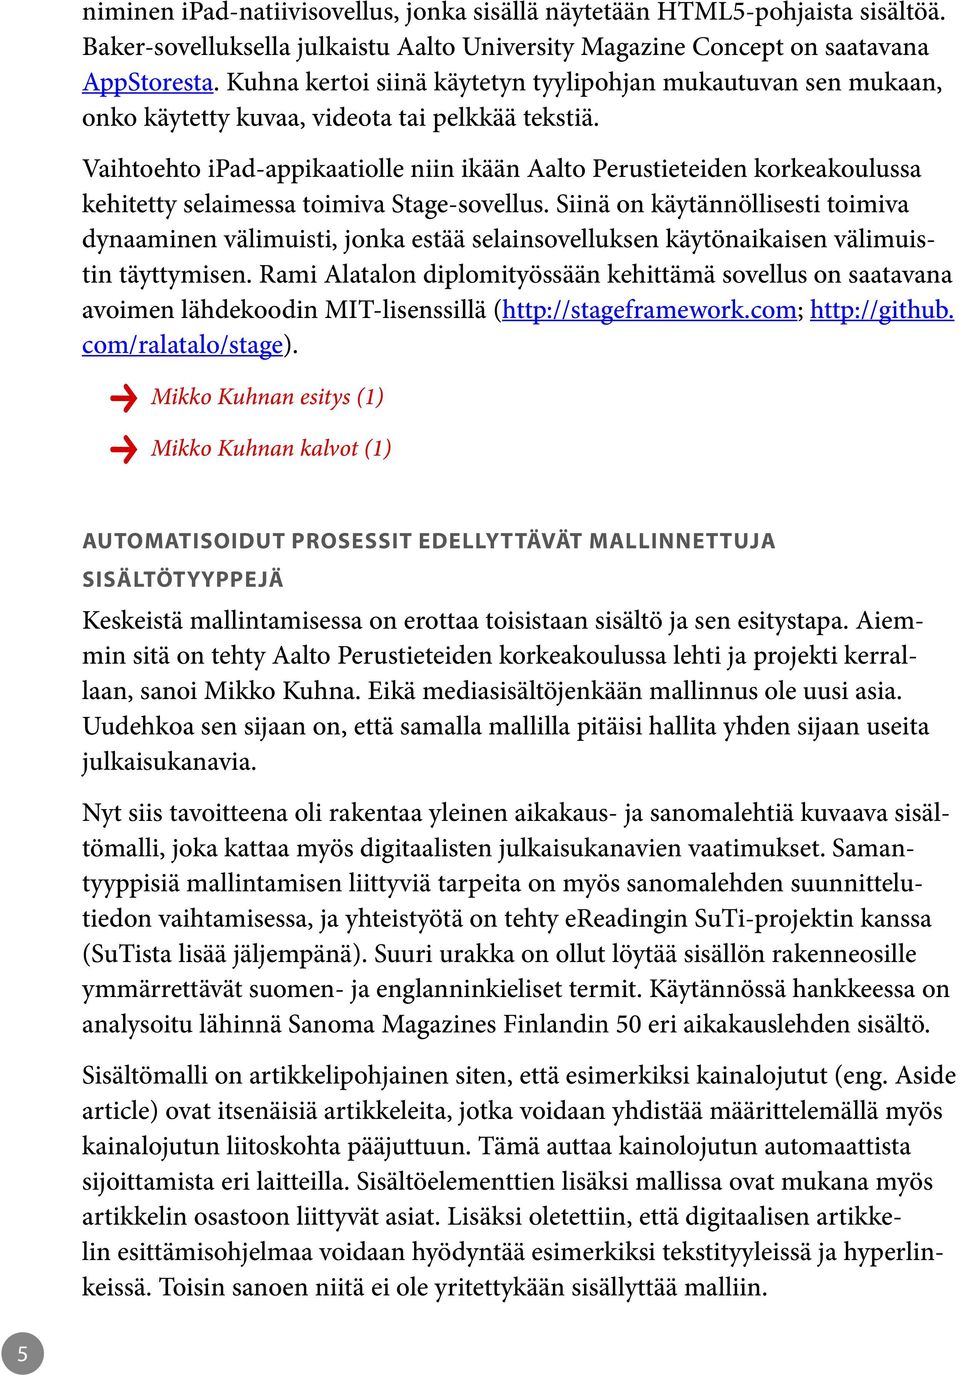 Vaihtoehto ipad-appikaatiolle niin ikään Aalto Perustieteiden korkeakoulussa kehitetty selaimessa toimiva Stage-sovellus.